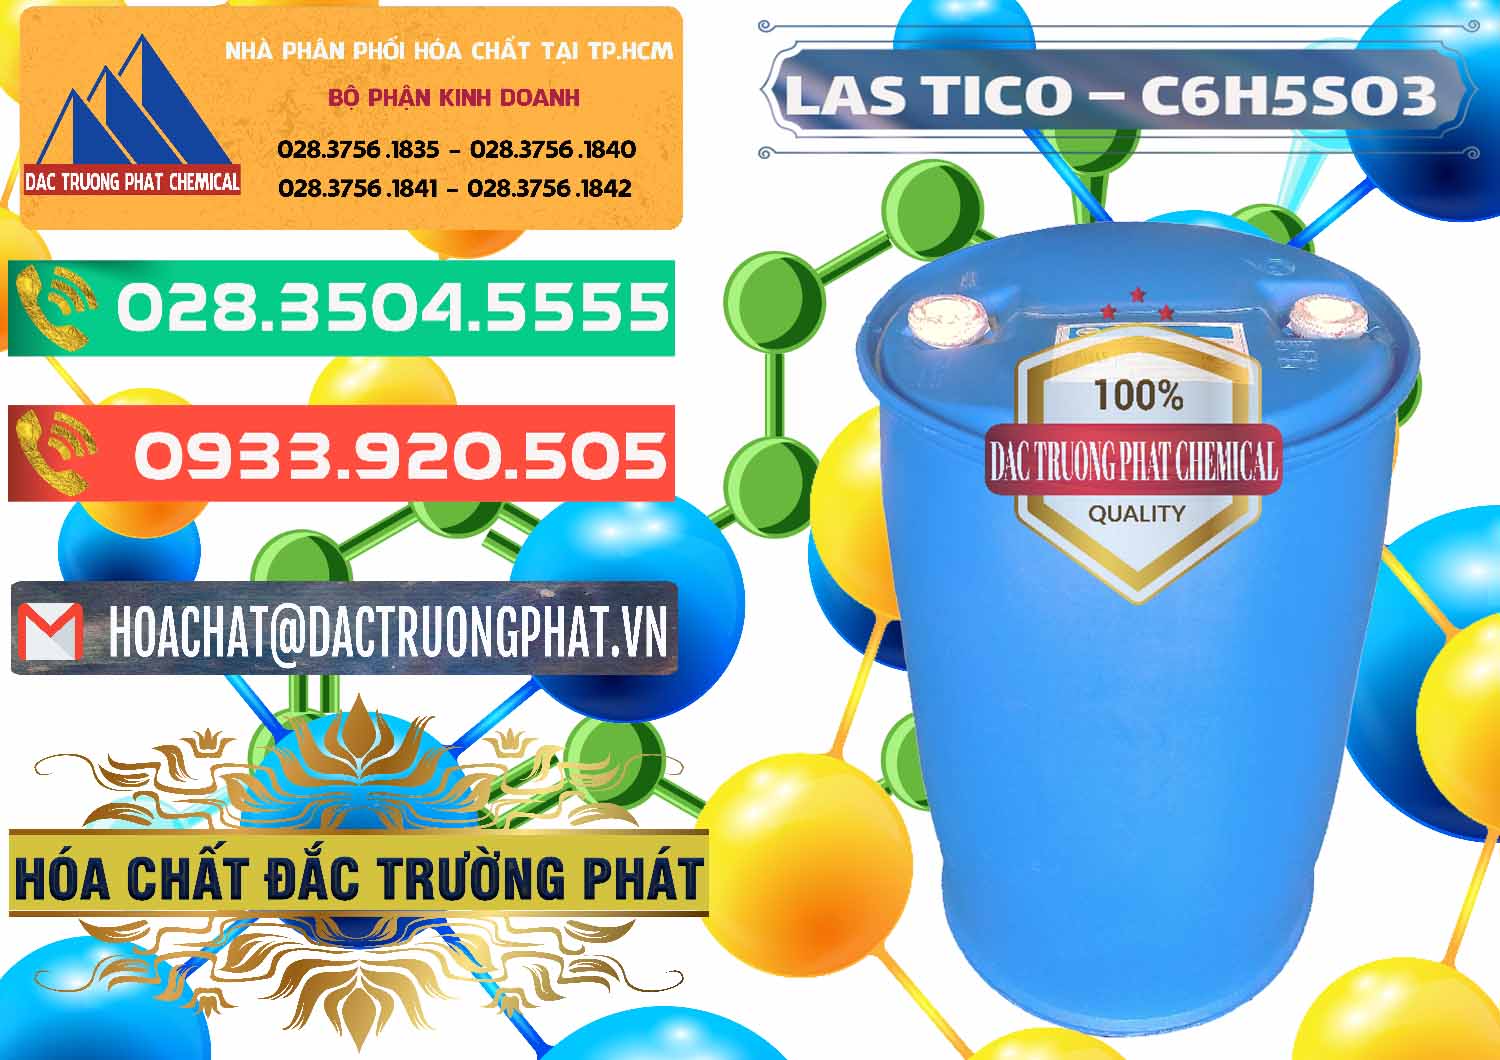 Công ty chuyên bán & phân phối Chất tạo bọt Las H Tico Việt Nam - 0190 - Nơi chuyên bán và phân phối hóa chất tại TP.HCM - congtyhoachat.com.vn